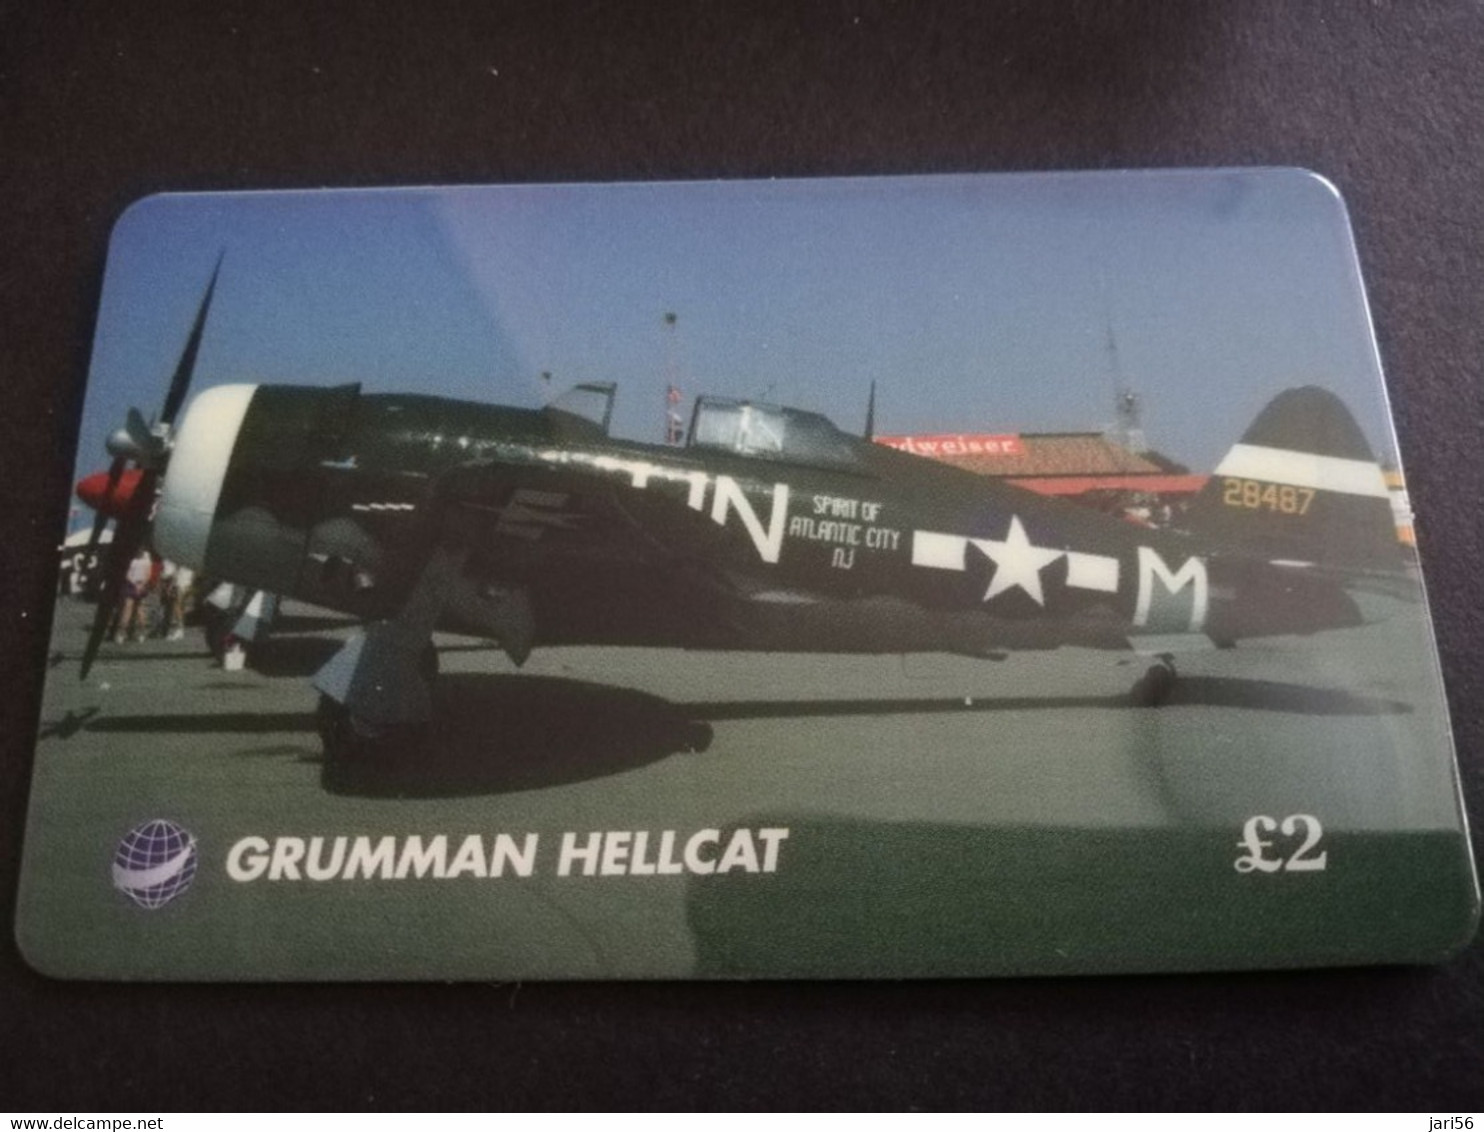 GREAT BRITAIN   2 POUND  AIR PLANES    GRUMMAN HELLCAT   PREPAID CARD      **5445** - [10] Sammlungen